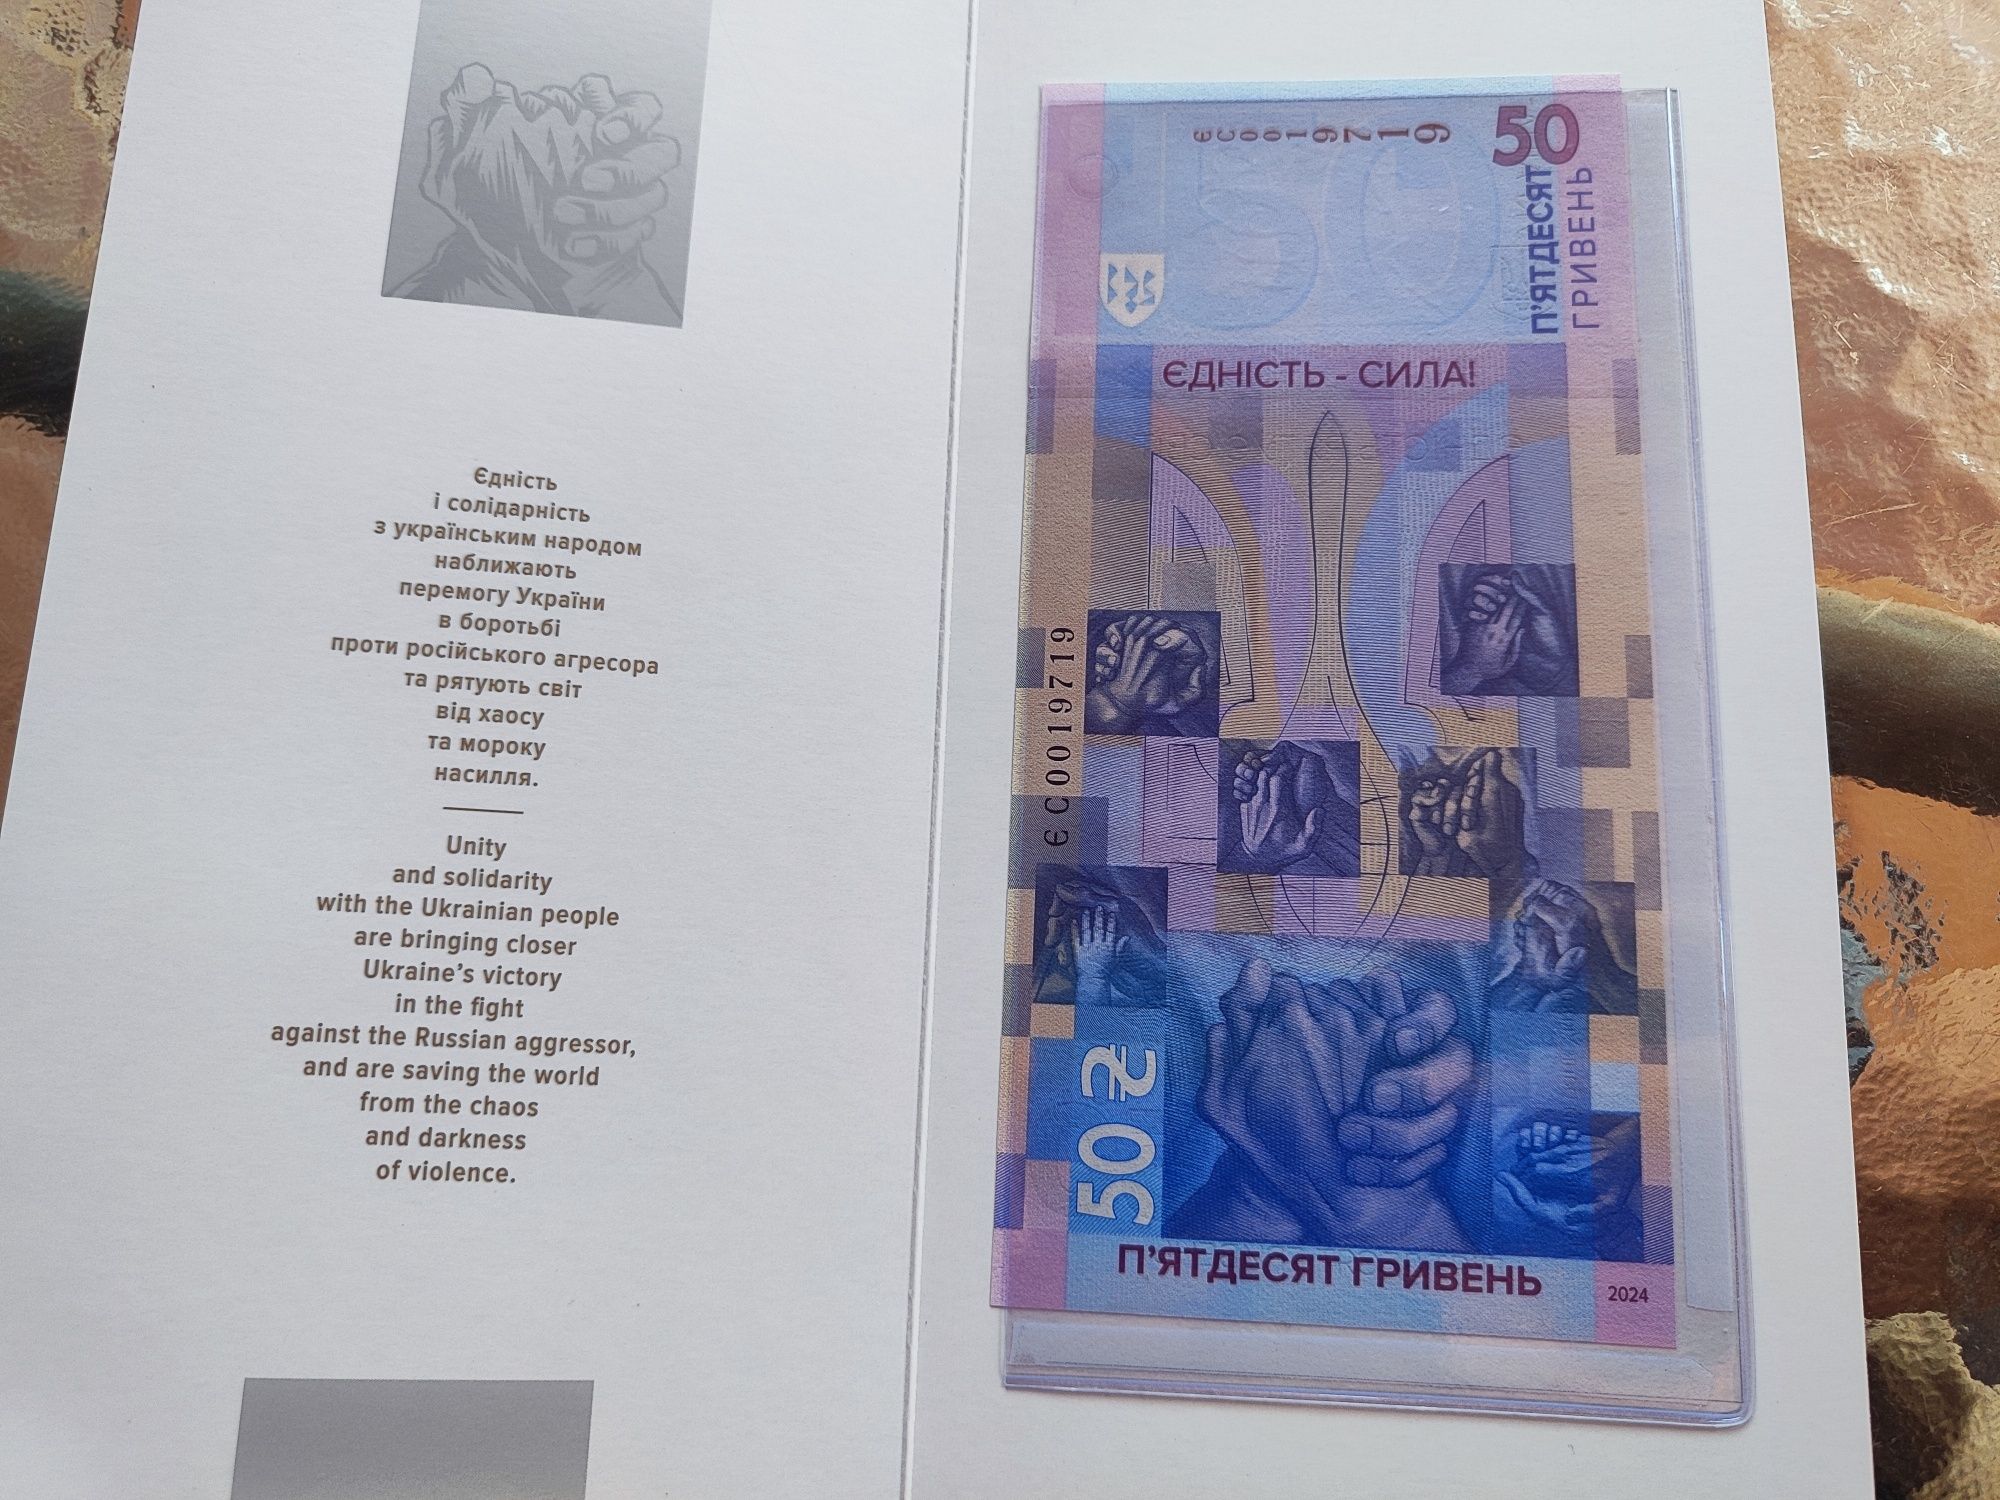 Пам'ятна банкнота Єдність рятує світ 50 гривень